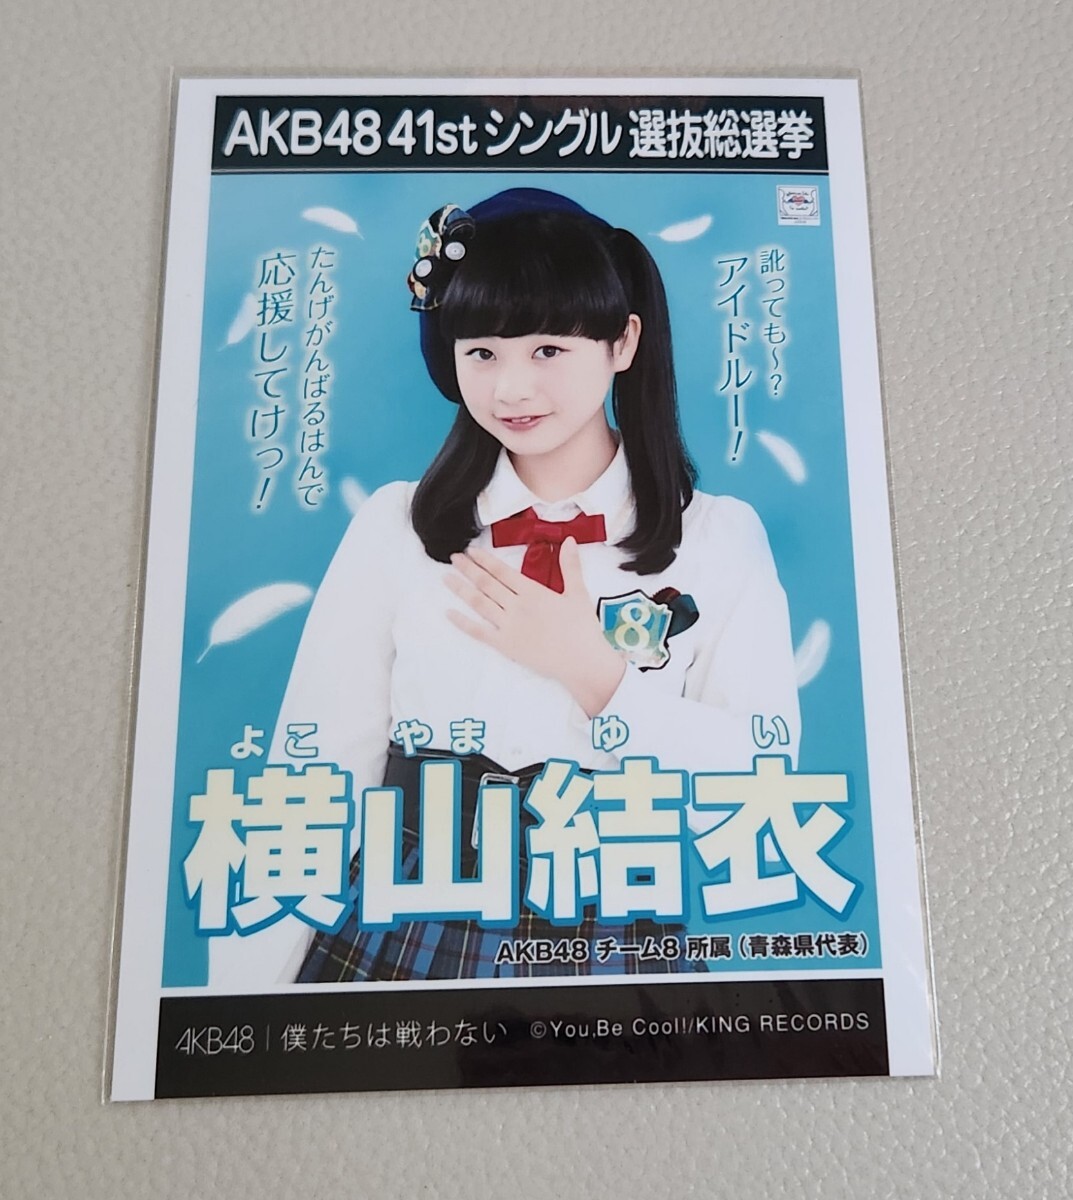 AKB48 チーム8 横山結衣 AKB48 僕たちは戦わない 劇場盤 生写真_画像1